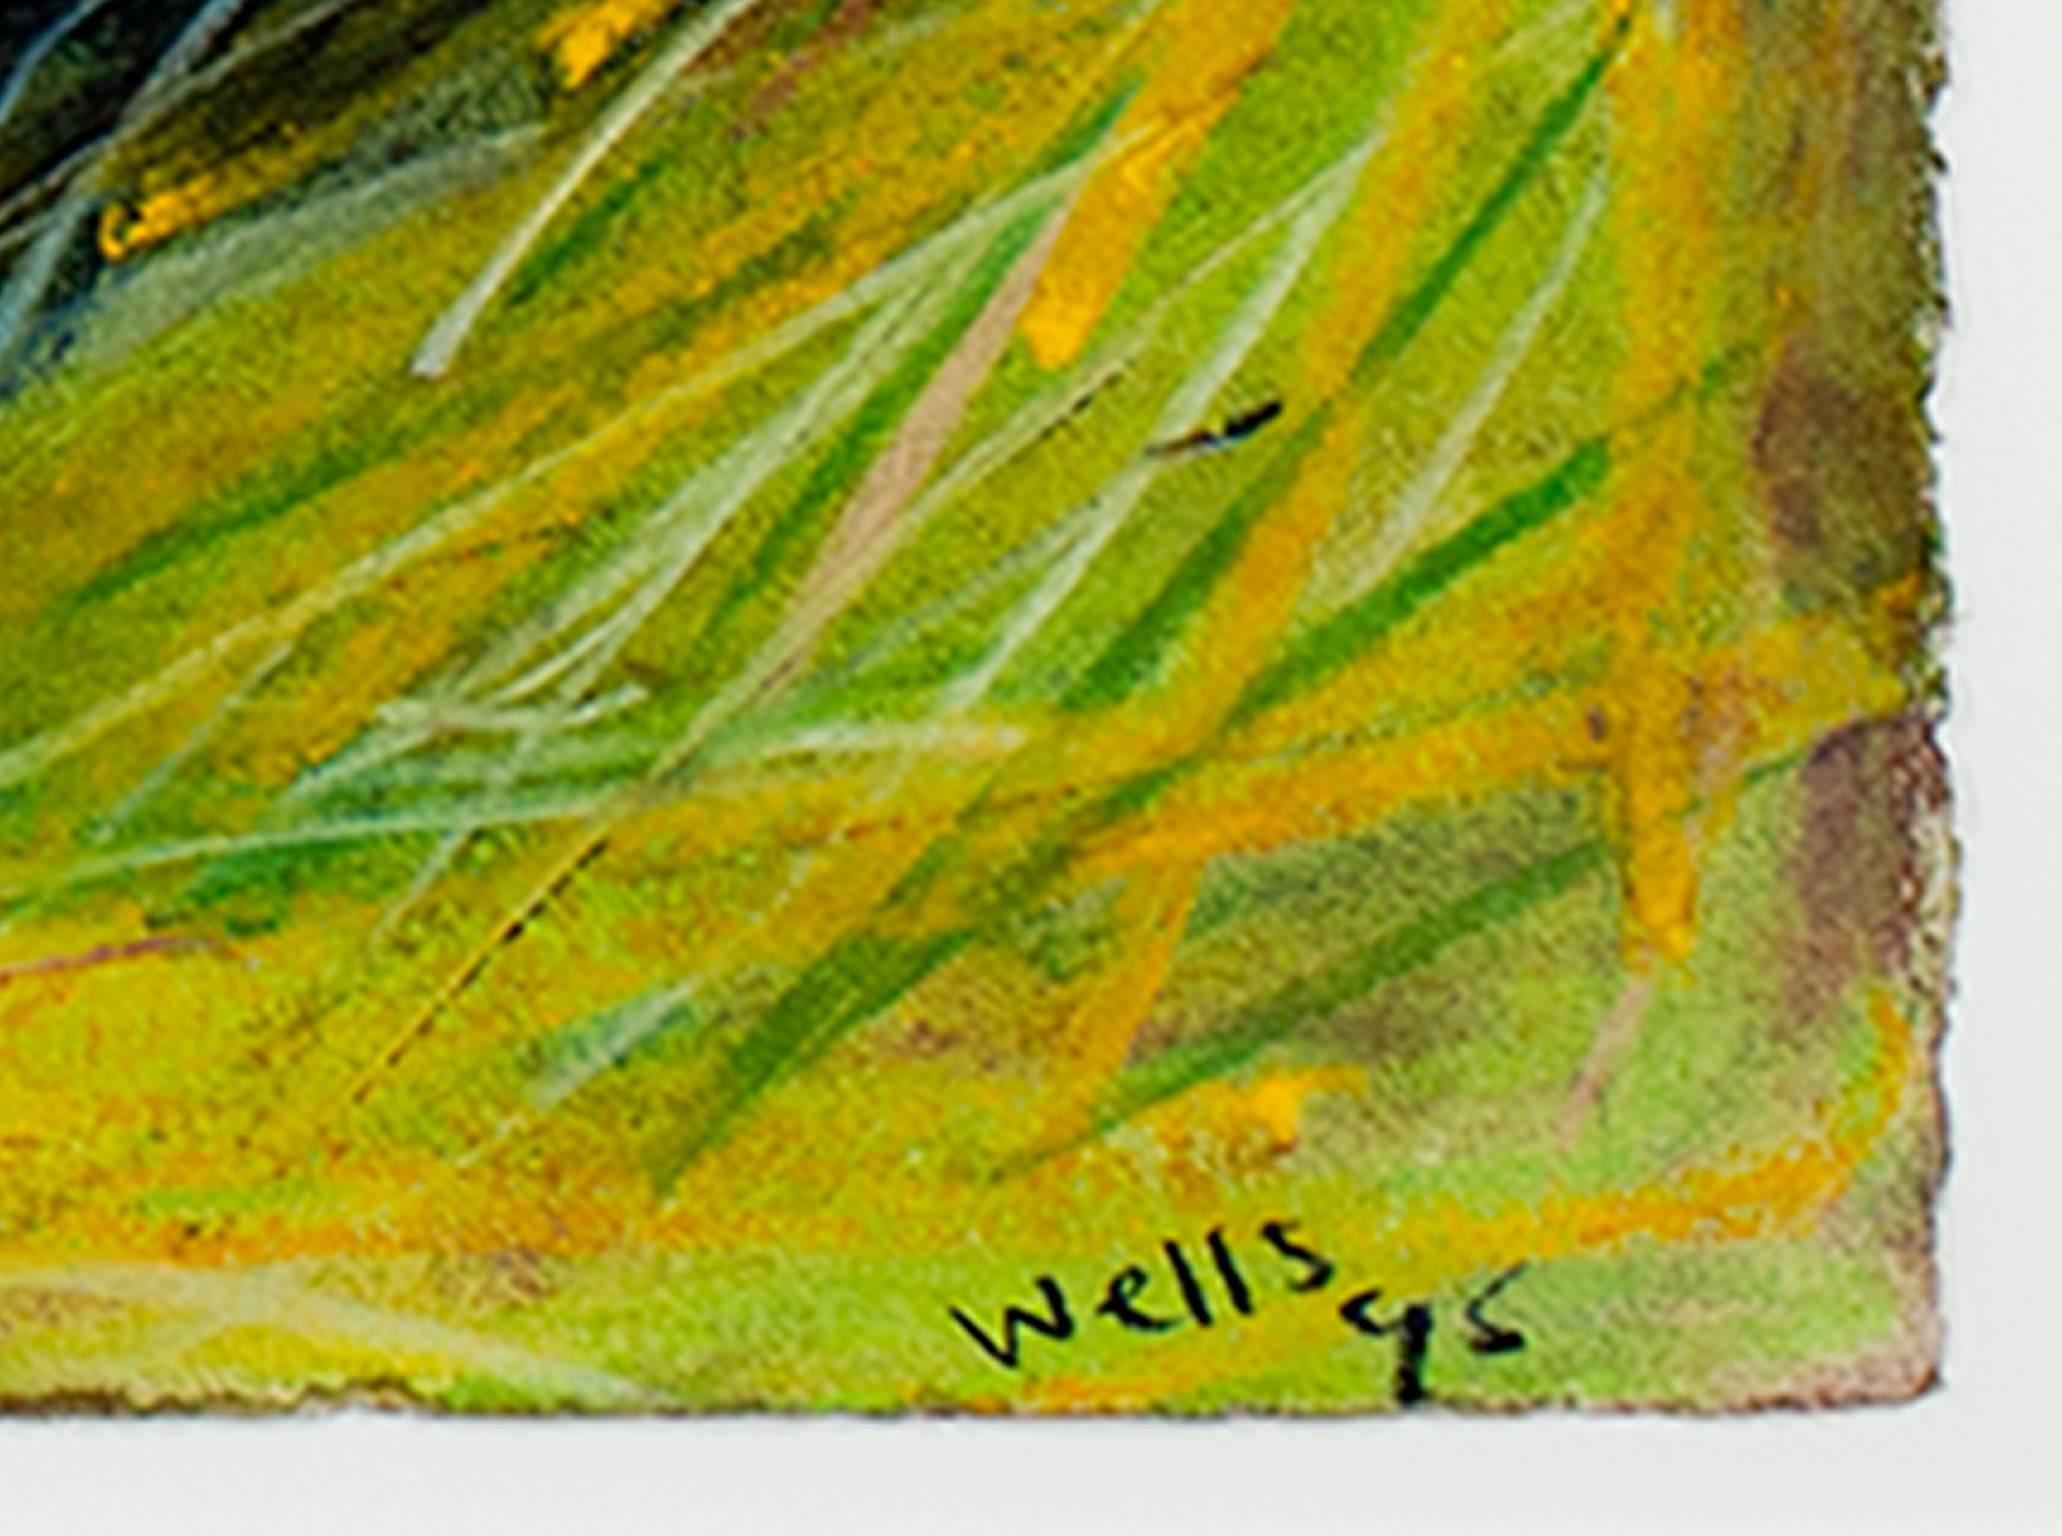 della wells art for sale